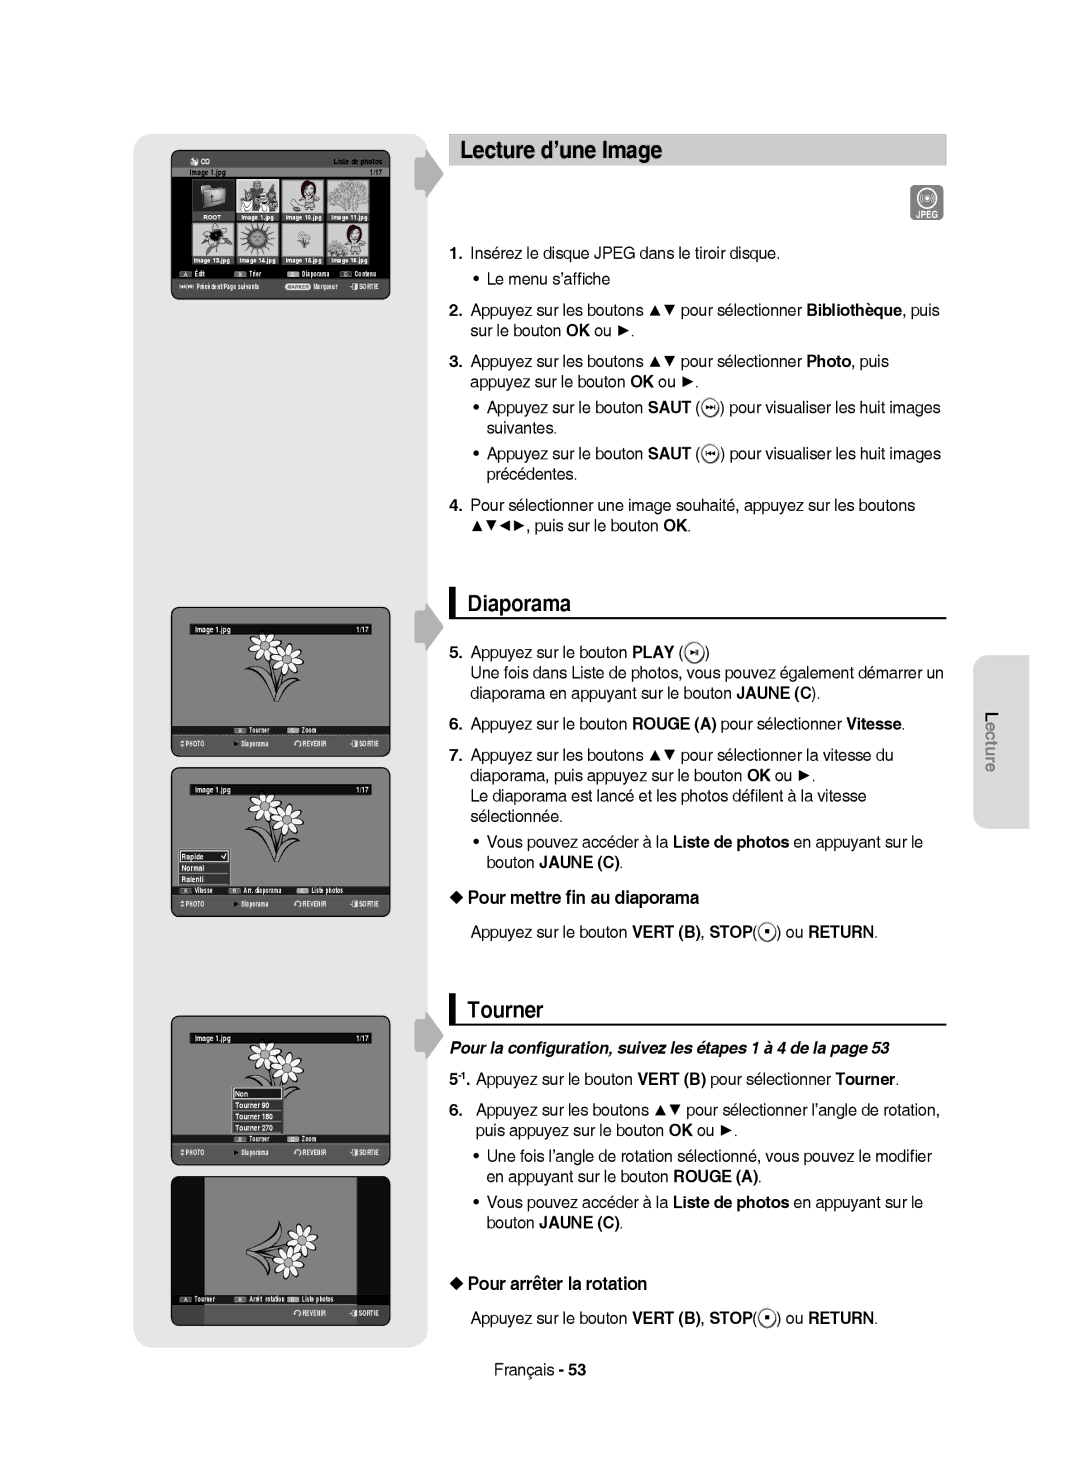 Samsung DVD-HR750/XEB manual Lecture d’une Image, Diaporama, Tourner, Pour mettre ﬁn au diaporama, Pour arrêter la rotation 